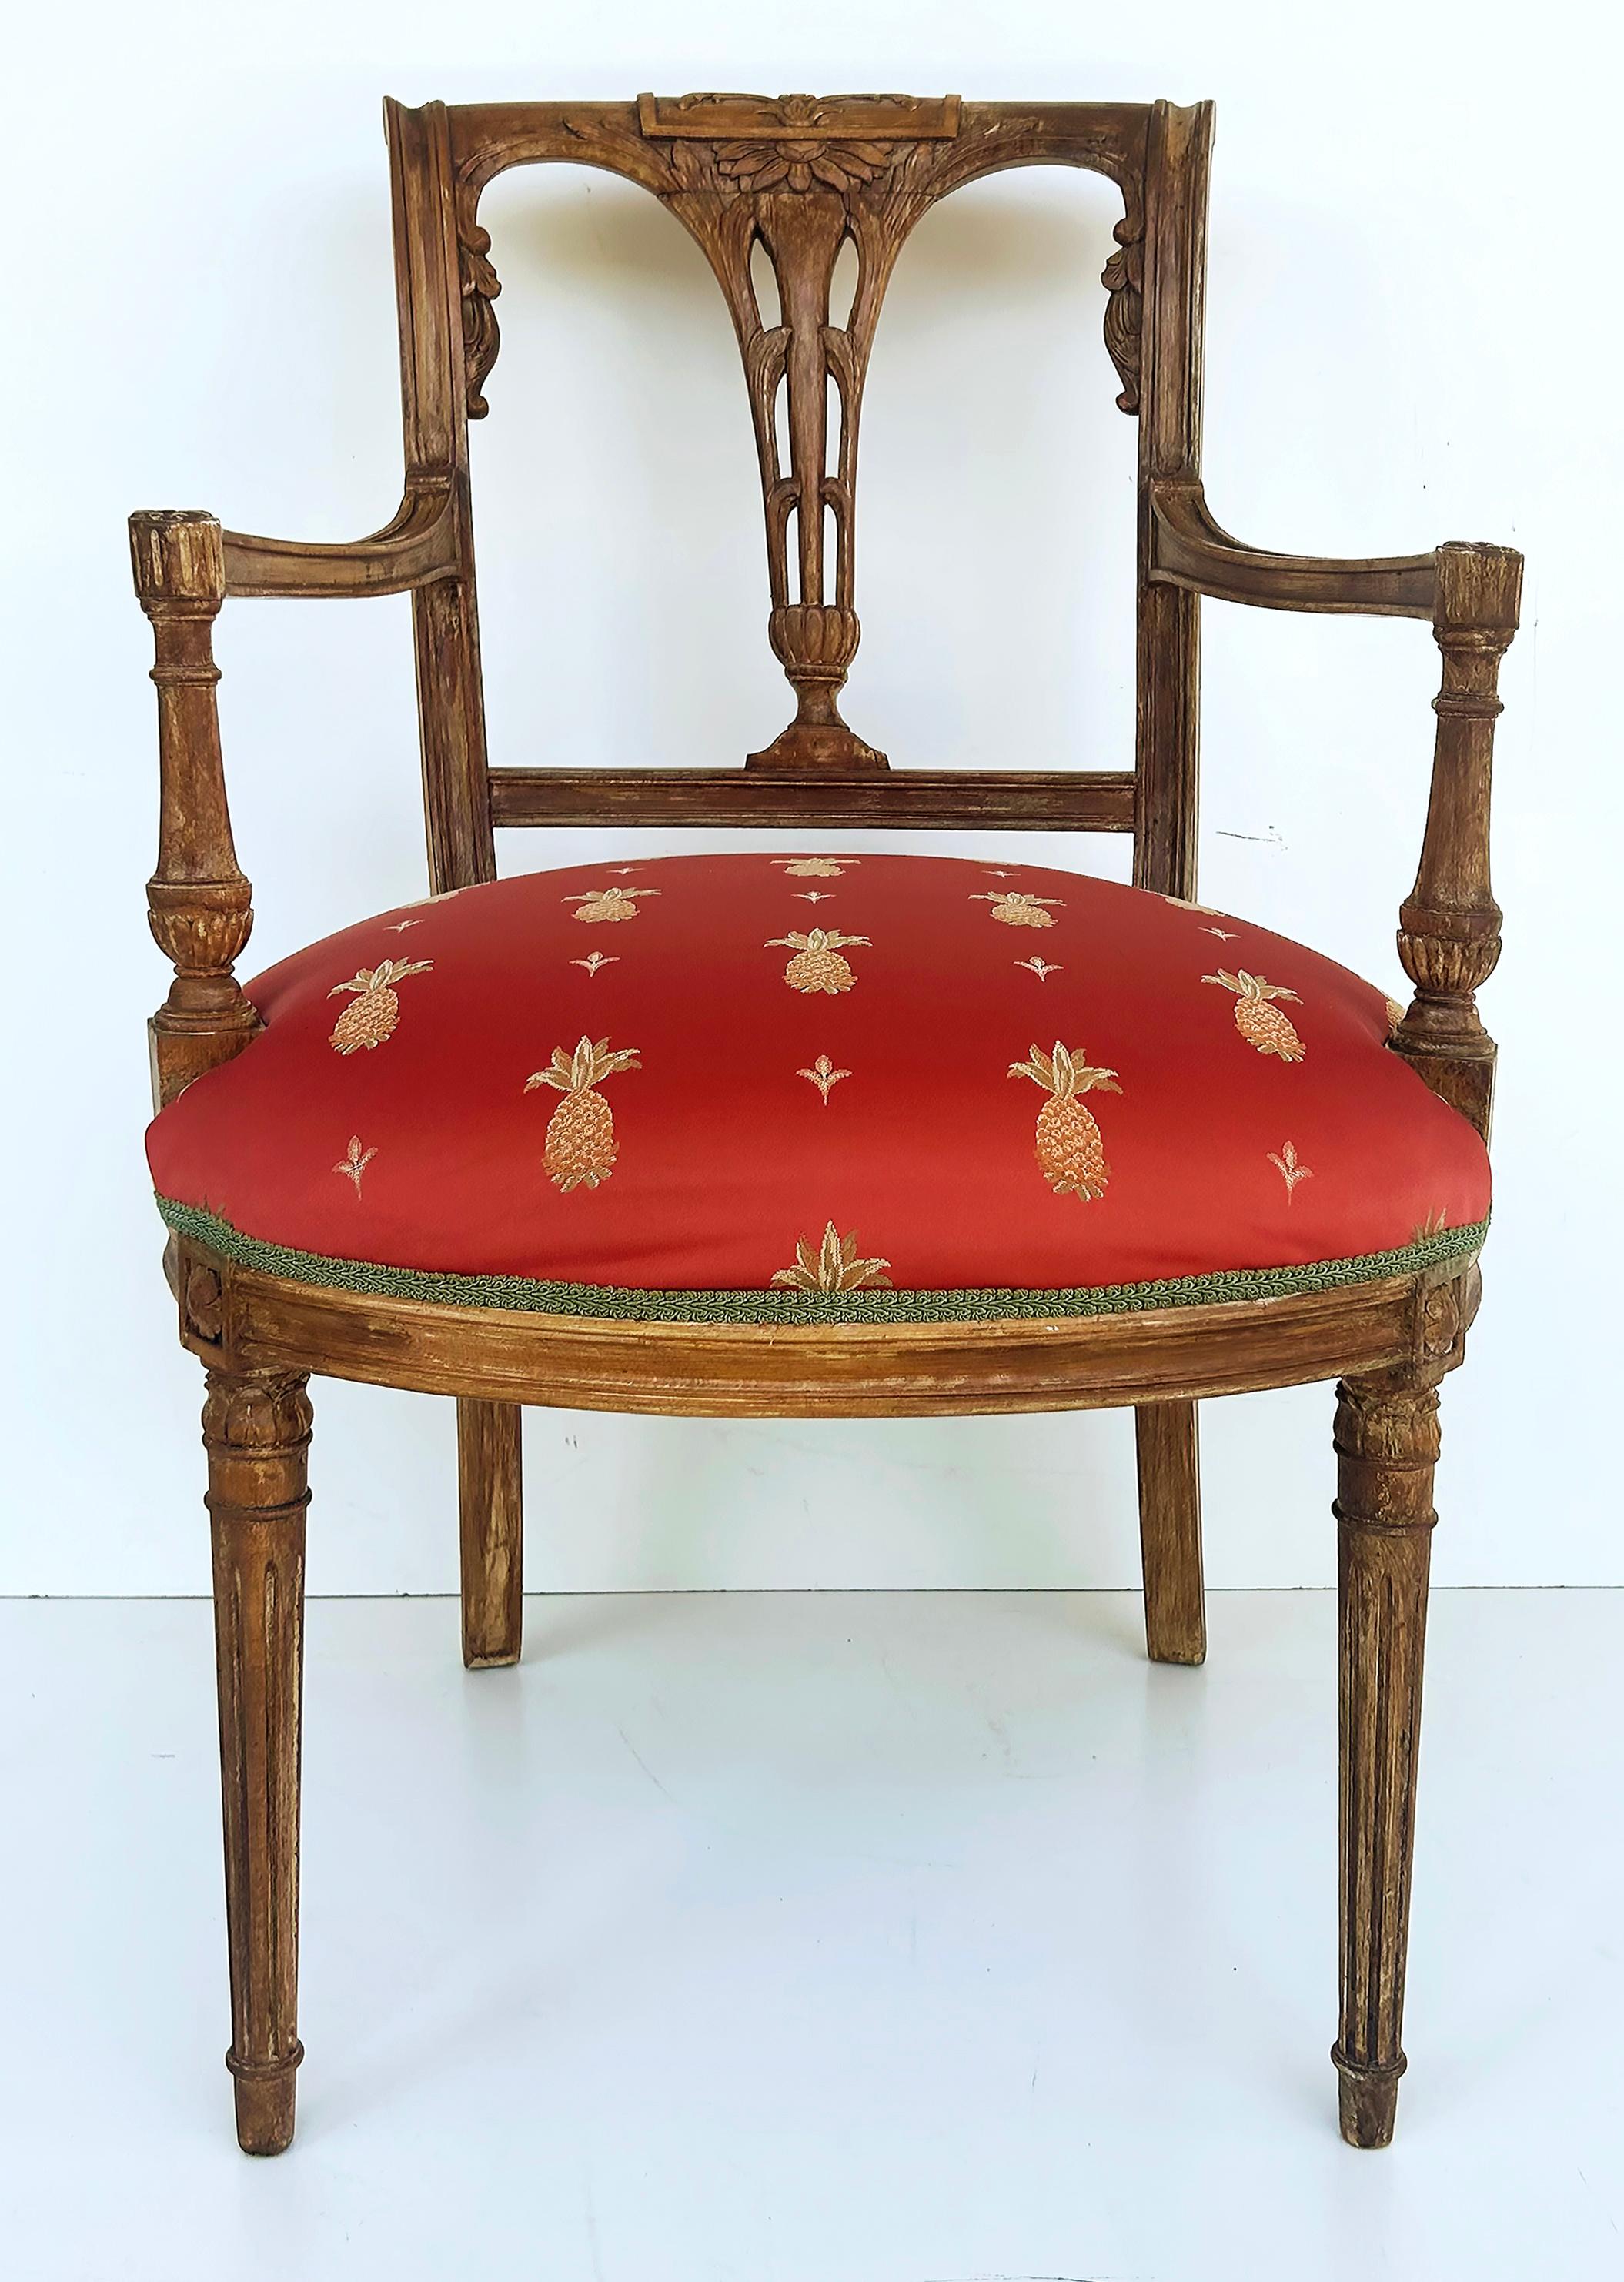 Fauteuils vénitiens anciens sculptés en bois plâtré avec sièges ananas

Nous proposons à la vente une paire de fauteuils en bois sculpté du début du XXe siècle, dont les finitions en plâtre vénitien, réalisées sur mesure, leur confèrent un